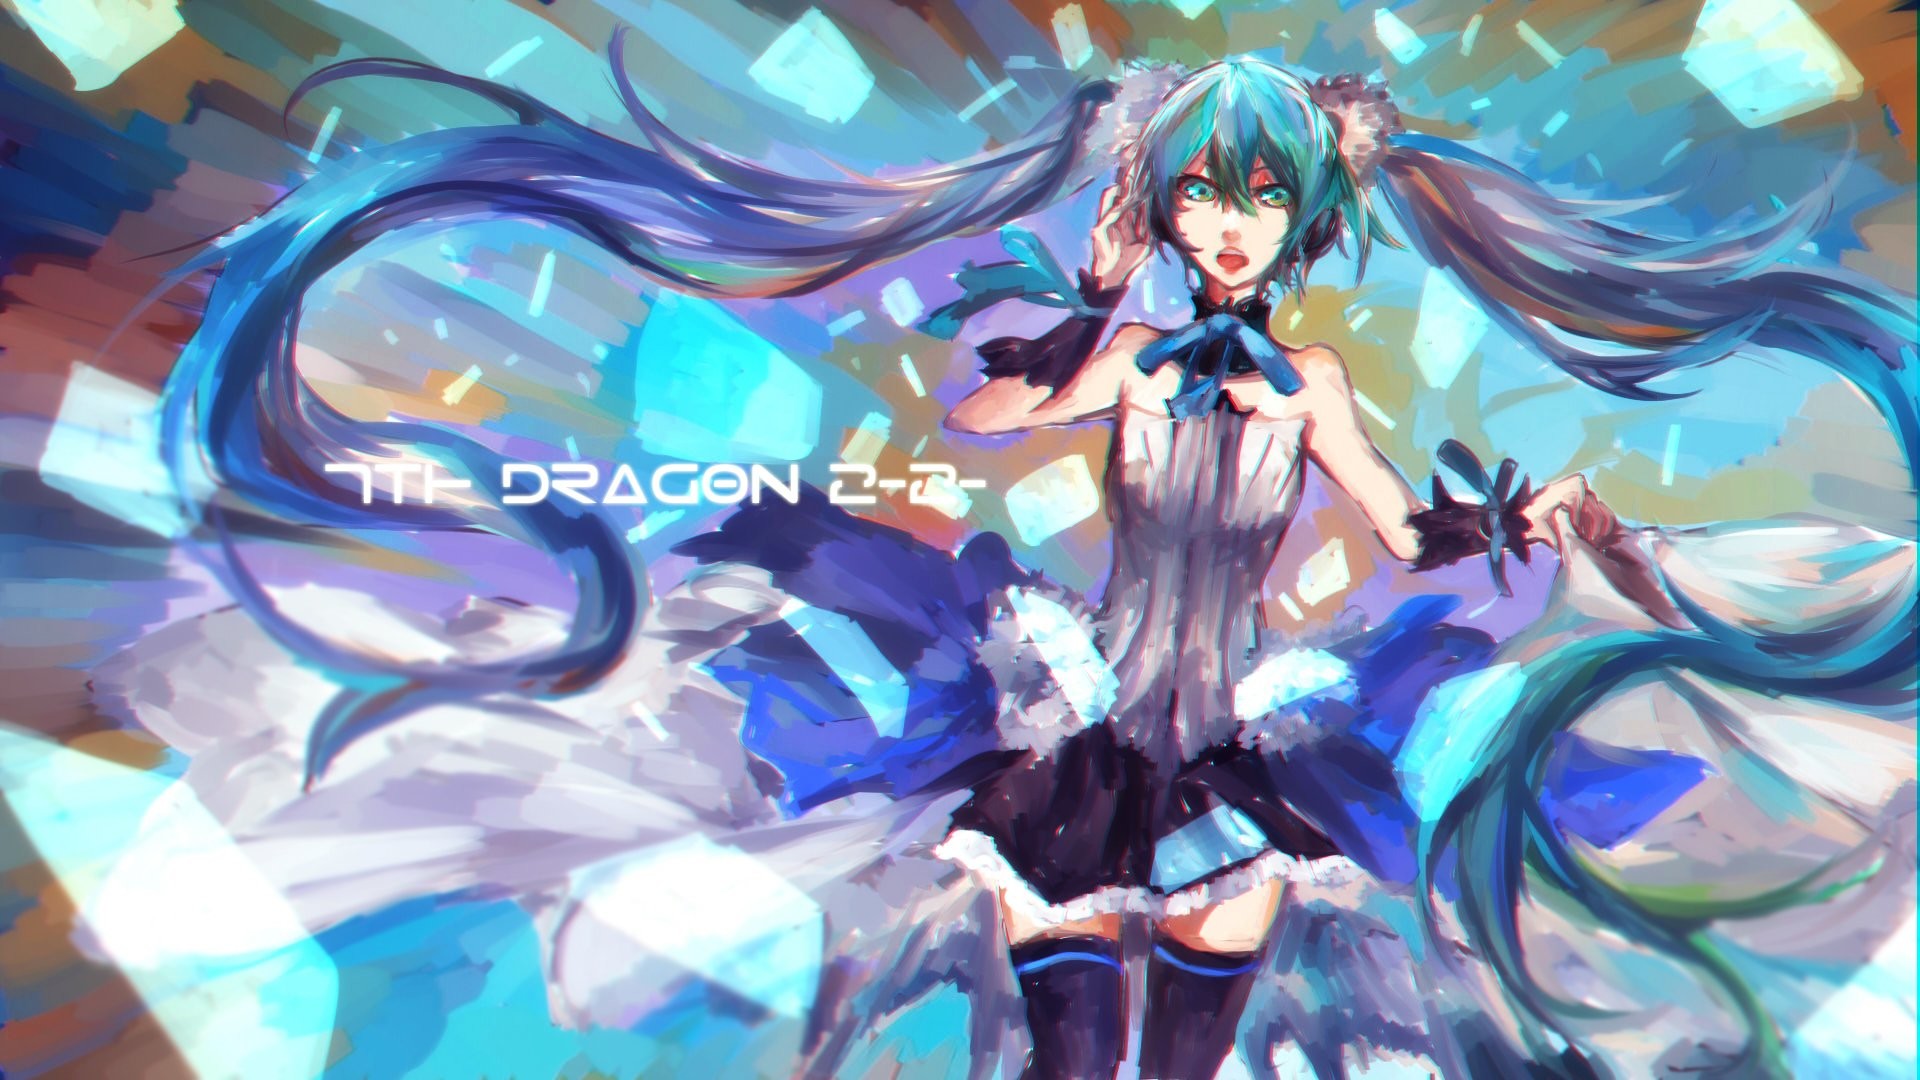 1920x1080 Project DIVA Extend 7th Dragon 2020 Vocaloid Hatsune Miku Cuffs wallpaper |   | 576737 | WallpaperUP